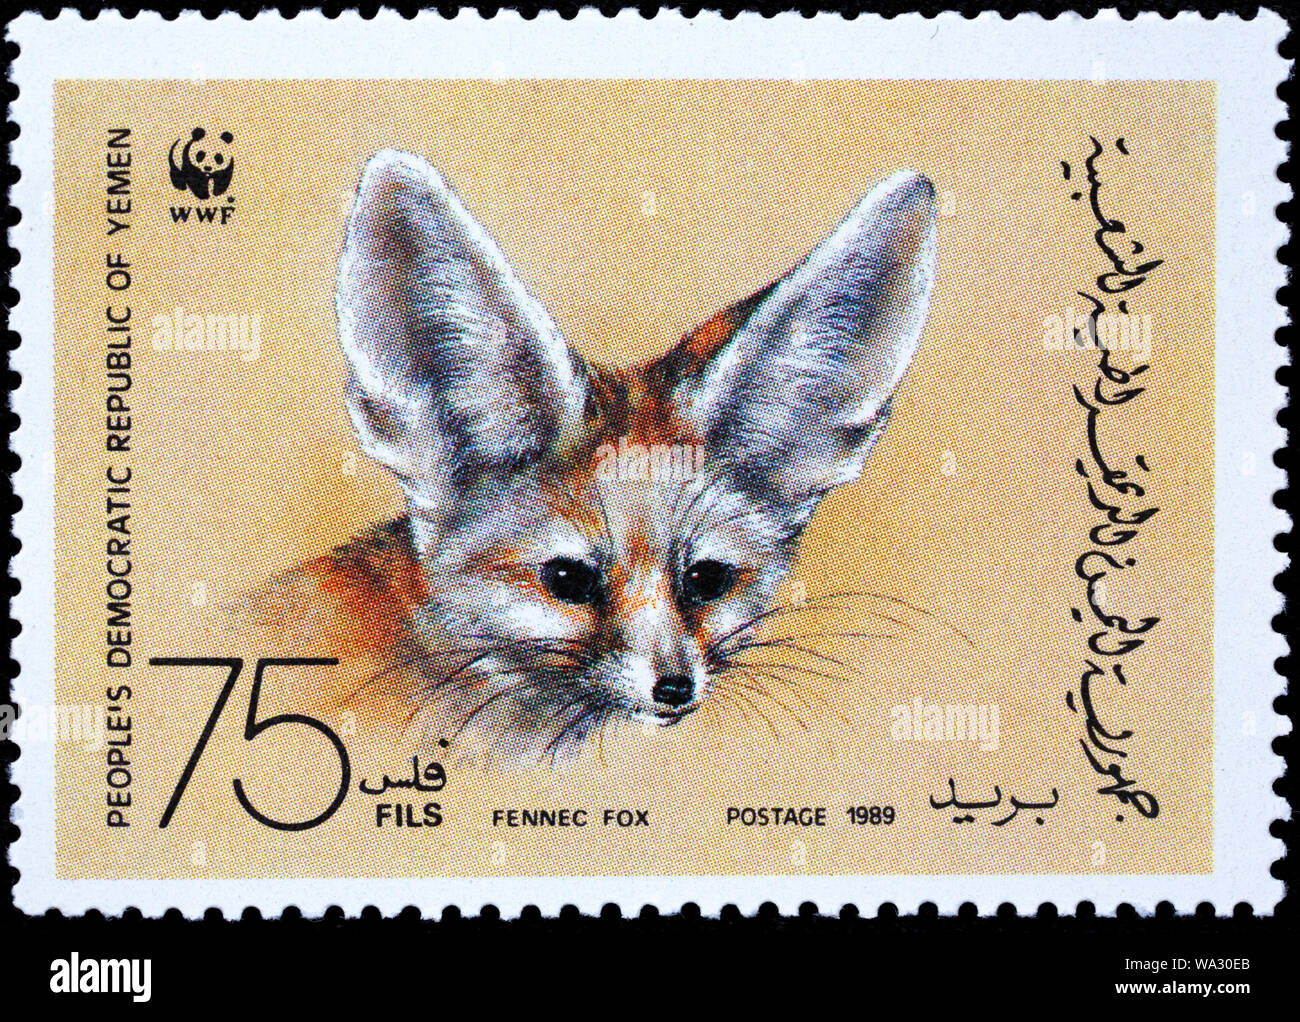 Fennec fox, Vulpes zerda, francobollo, Yemen, 1989 Foto Stock